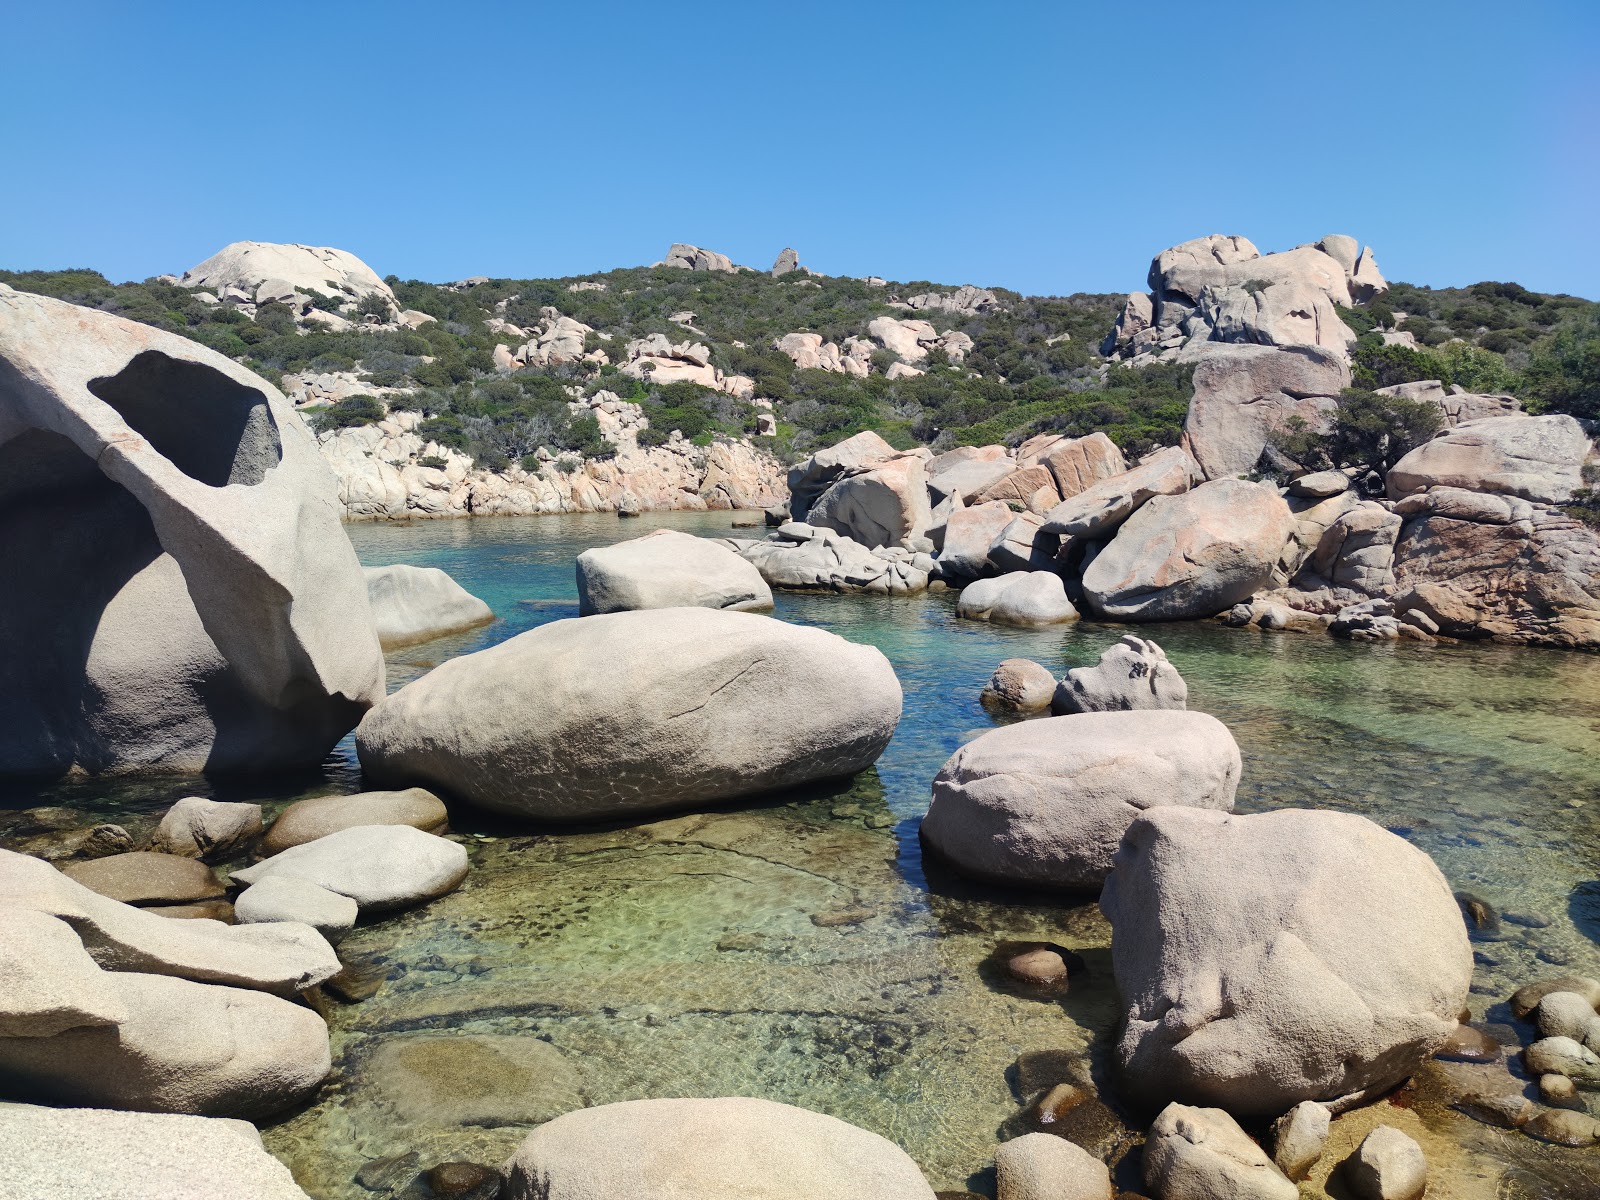 Photo of Spiaggia delle Piscine located in natural area